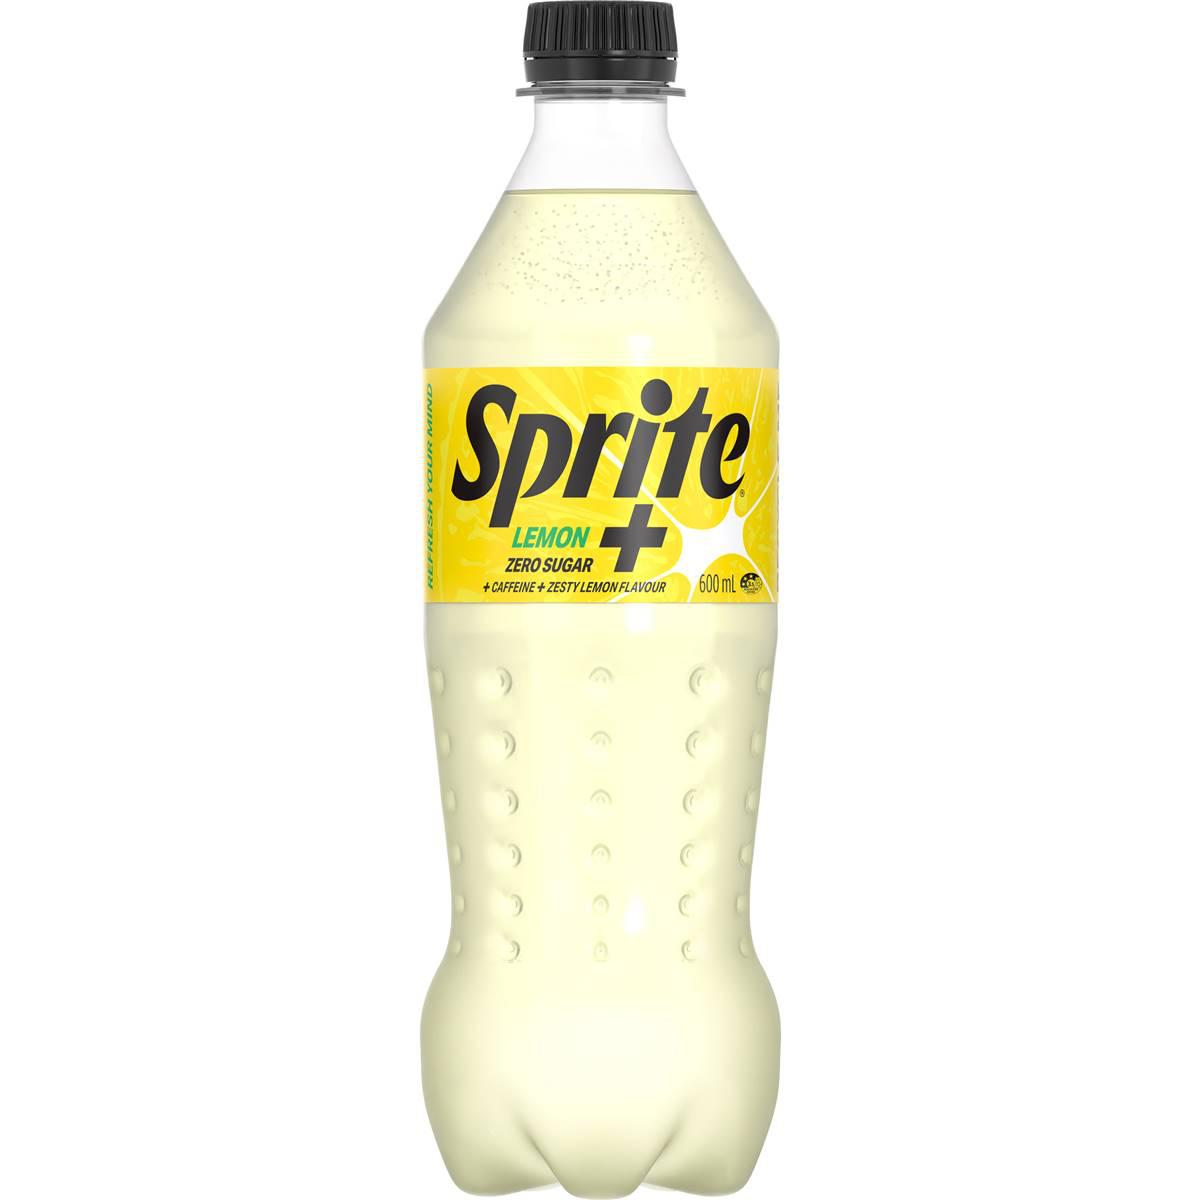 Sprite Lemon+ Zero Sugar Soft Drink Bottle 600ml